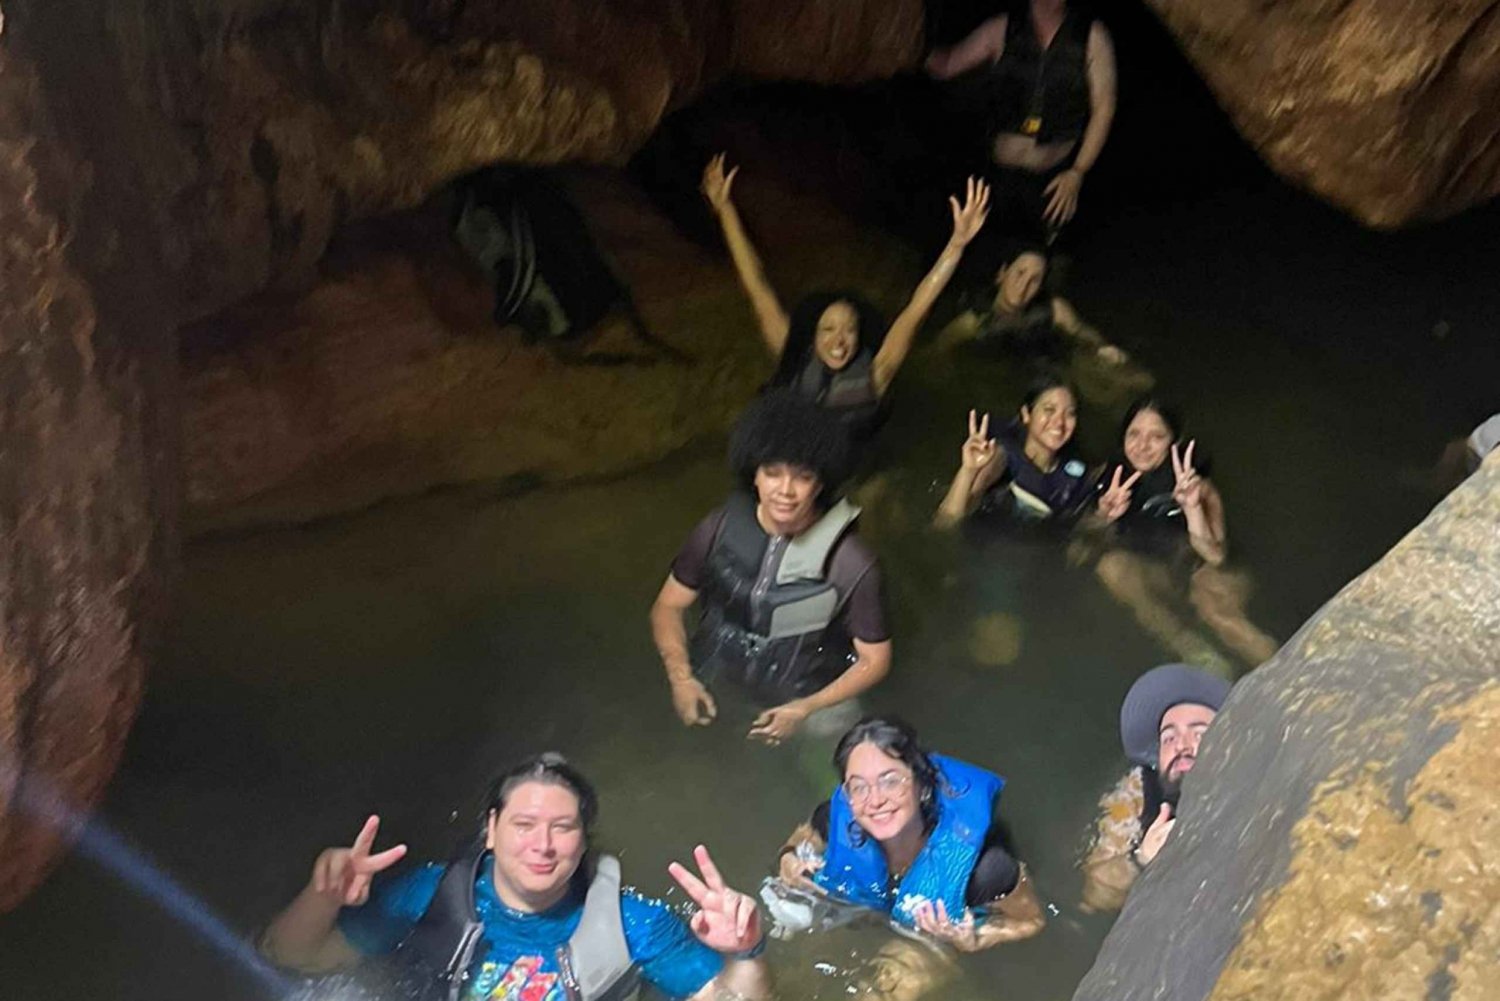 De San Juan: Cavernas na floresta tropical e aventura em uma cachoeira escondida